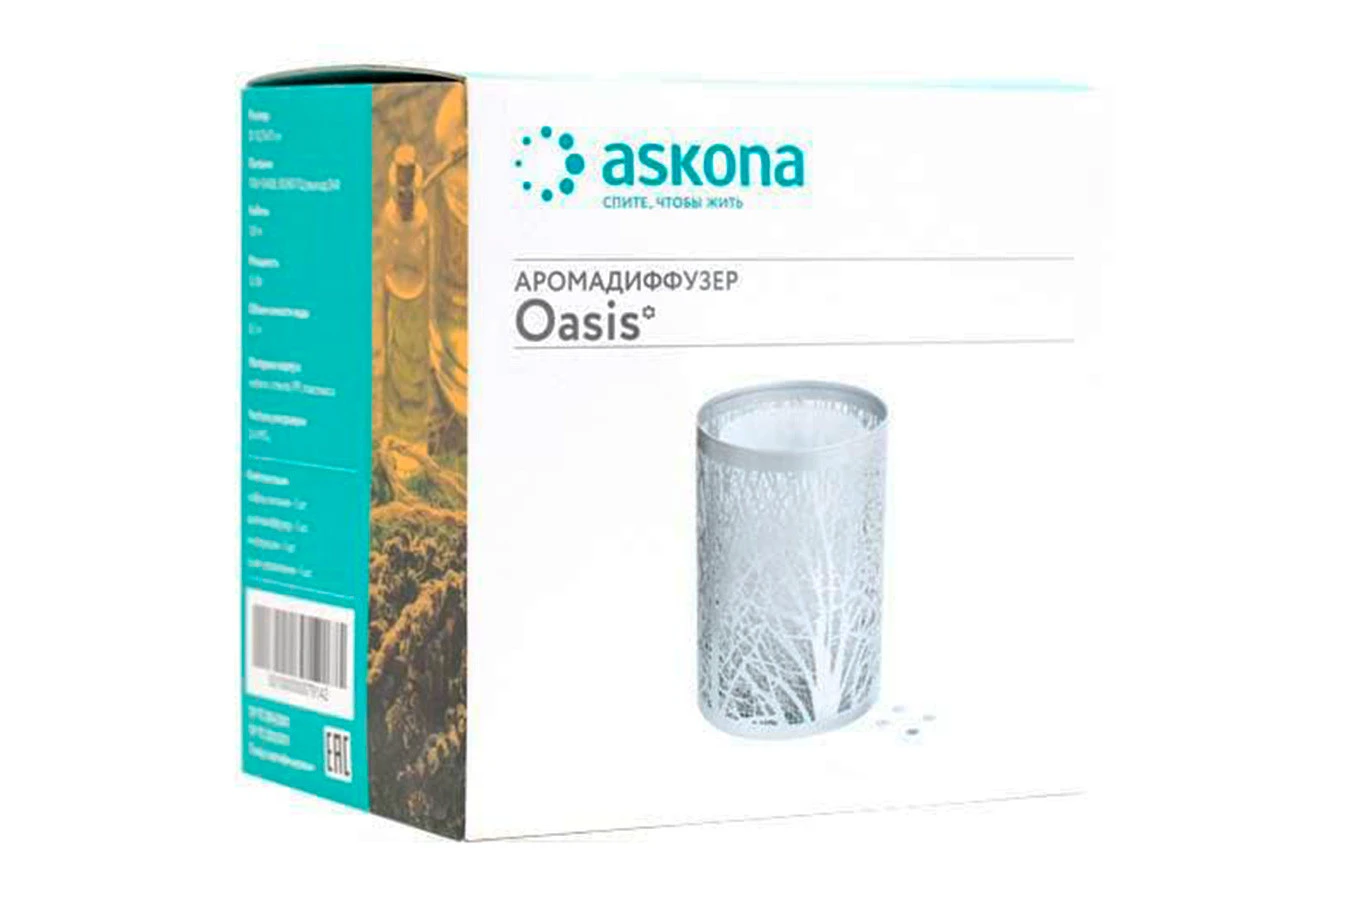  Аромадиффузор Oasis Askona фото - 8 - большое изображение